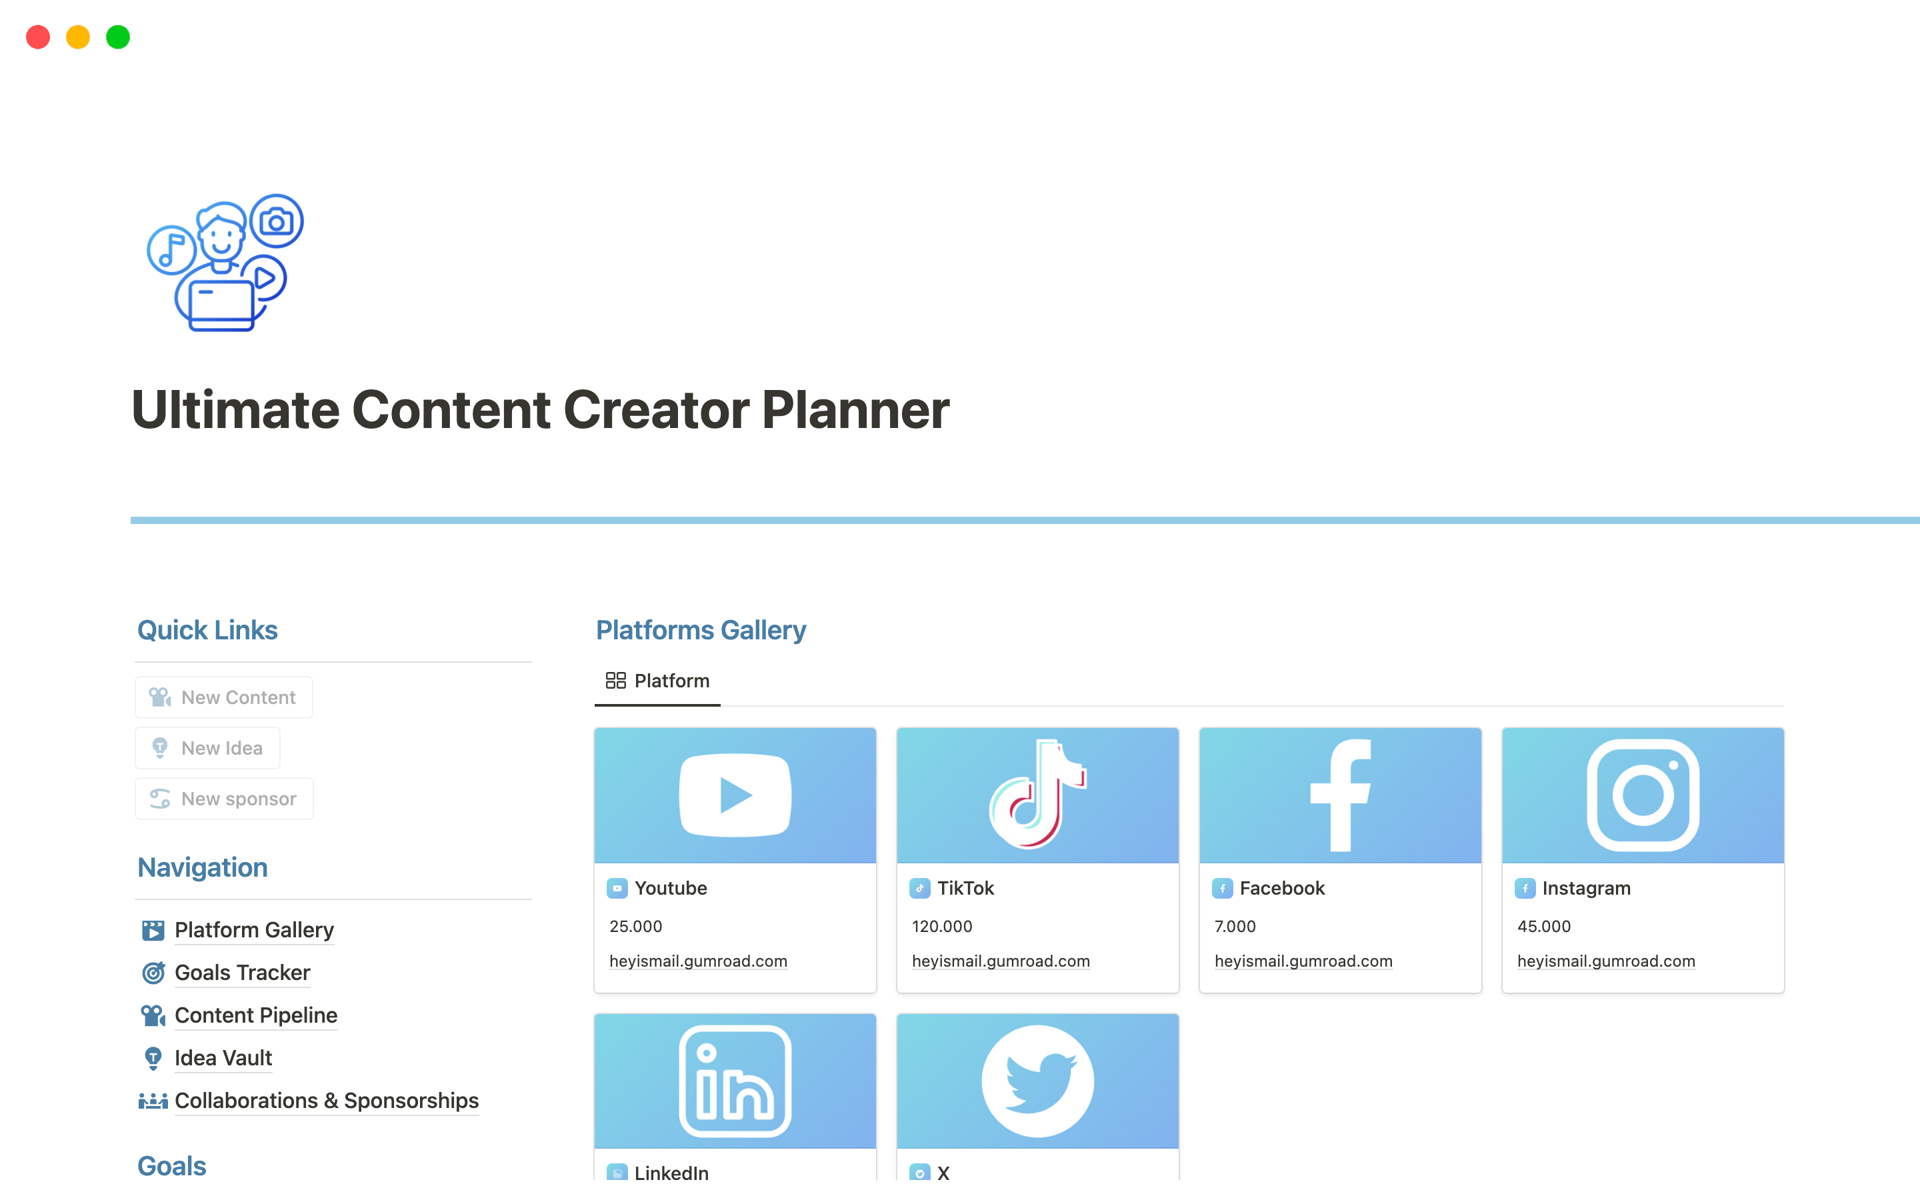 Uma prévia do modelo para Ultimate Content Creator Planner 